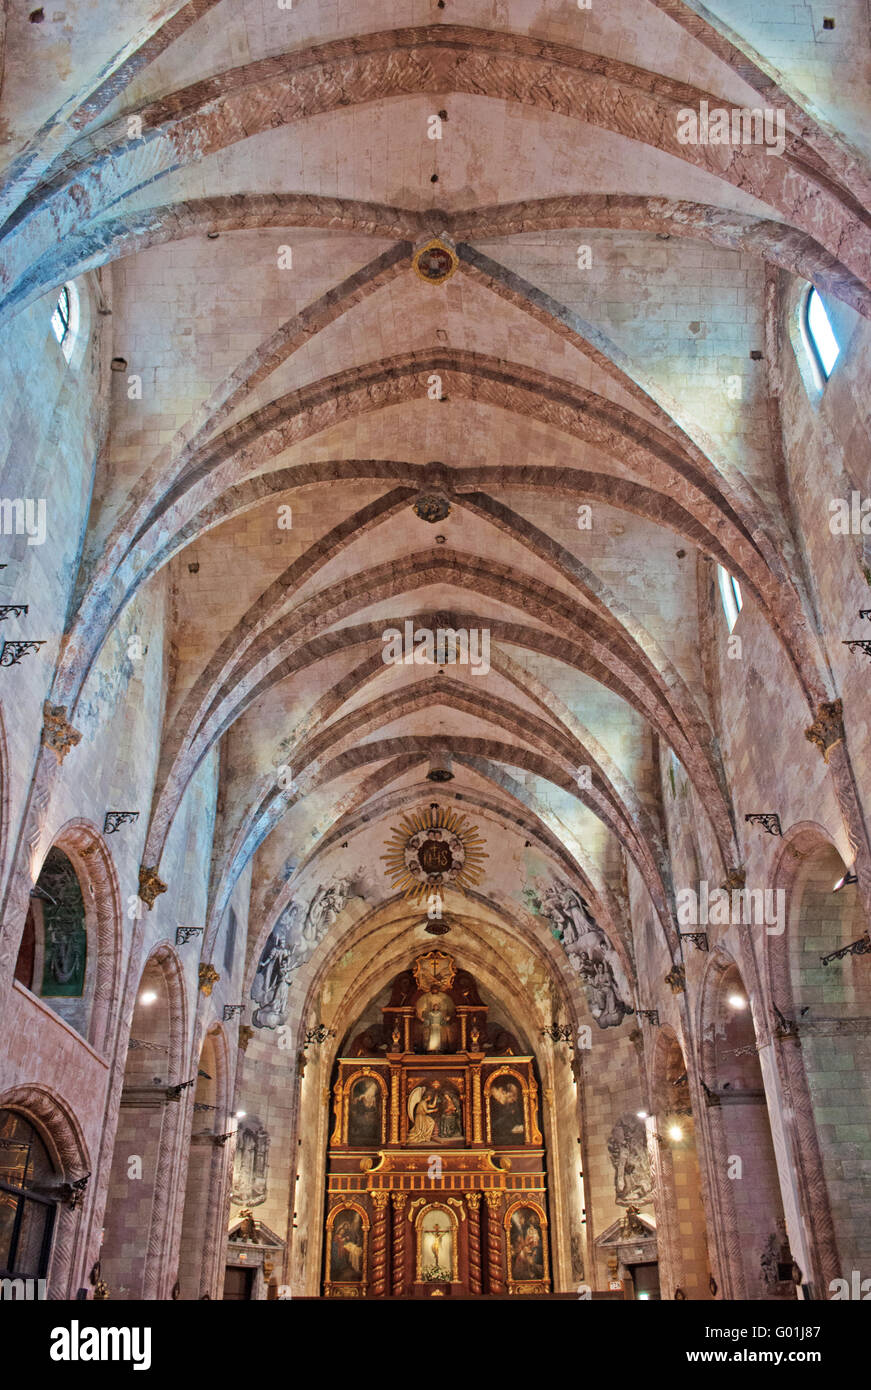 Iles Baléares, Espagne, Europe : Mahon, la nef de l'église et le couvent de Sant Francesc un ancien couvent qui abrite le Musée de Menorca Banque D'Images